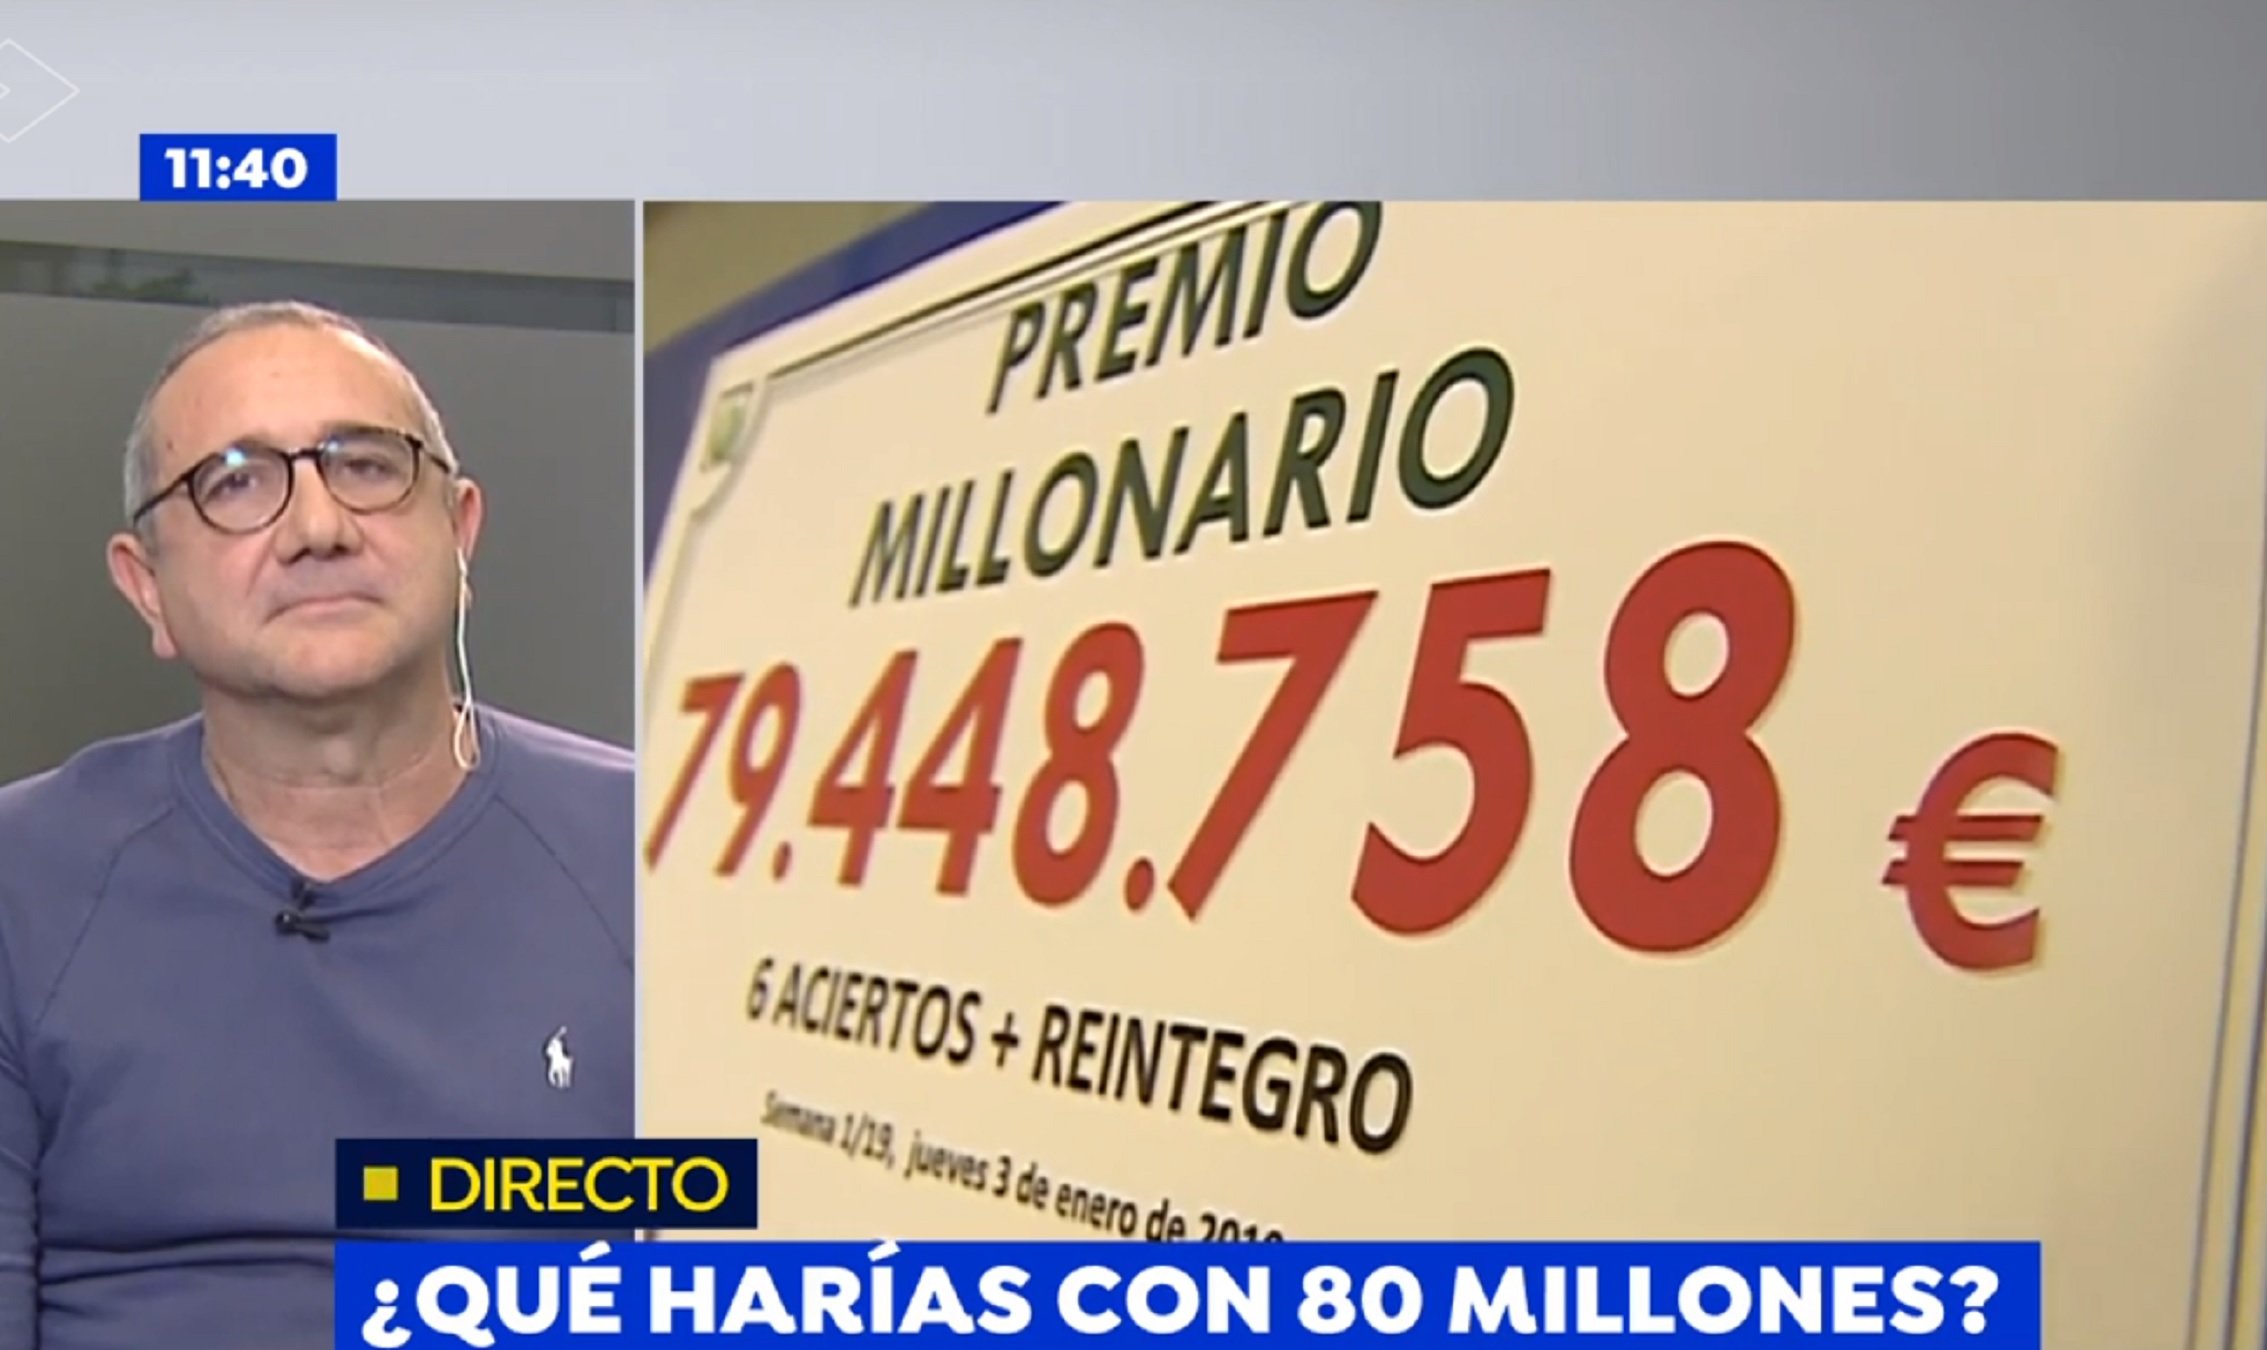 L'infern del lampista que ha guanyat 80 milions a La Primitiva: "Todos me piden"